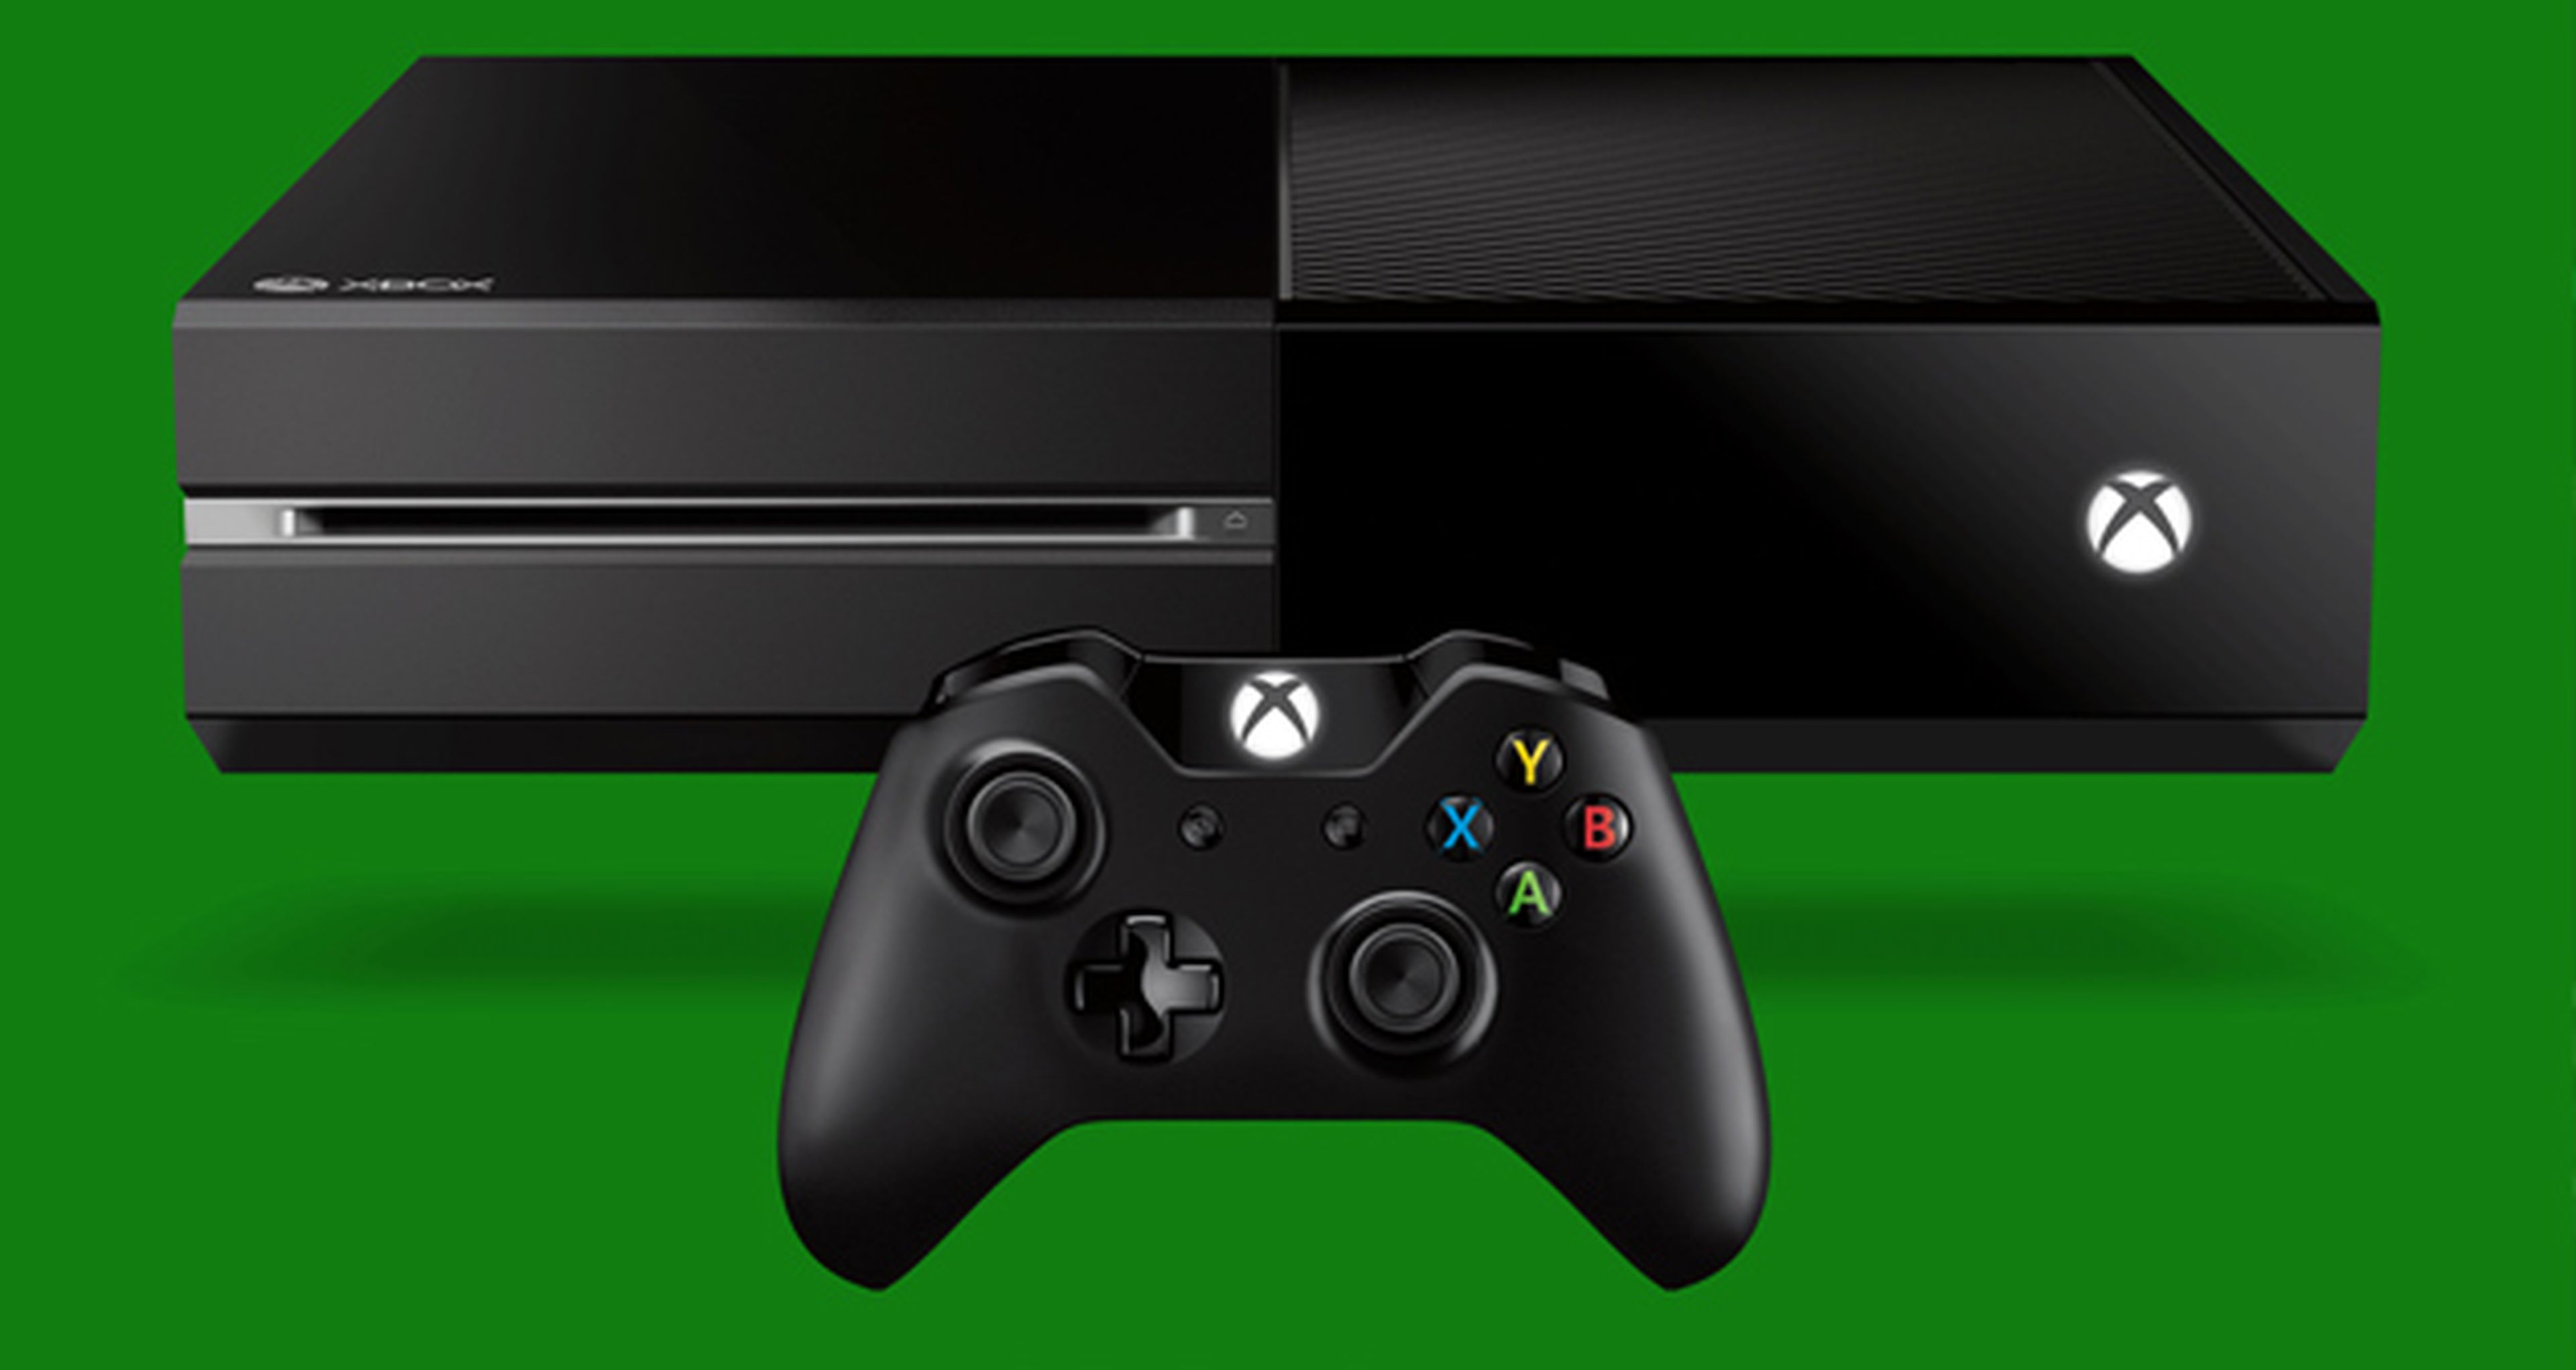 Desveladas más características del nuevo firmware de Xbox One